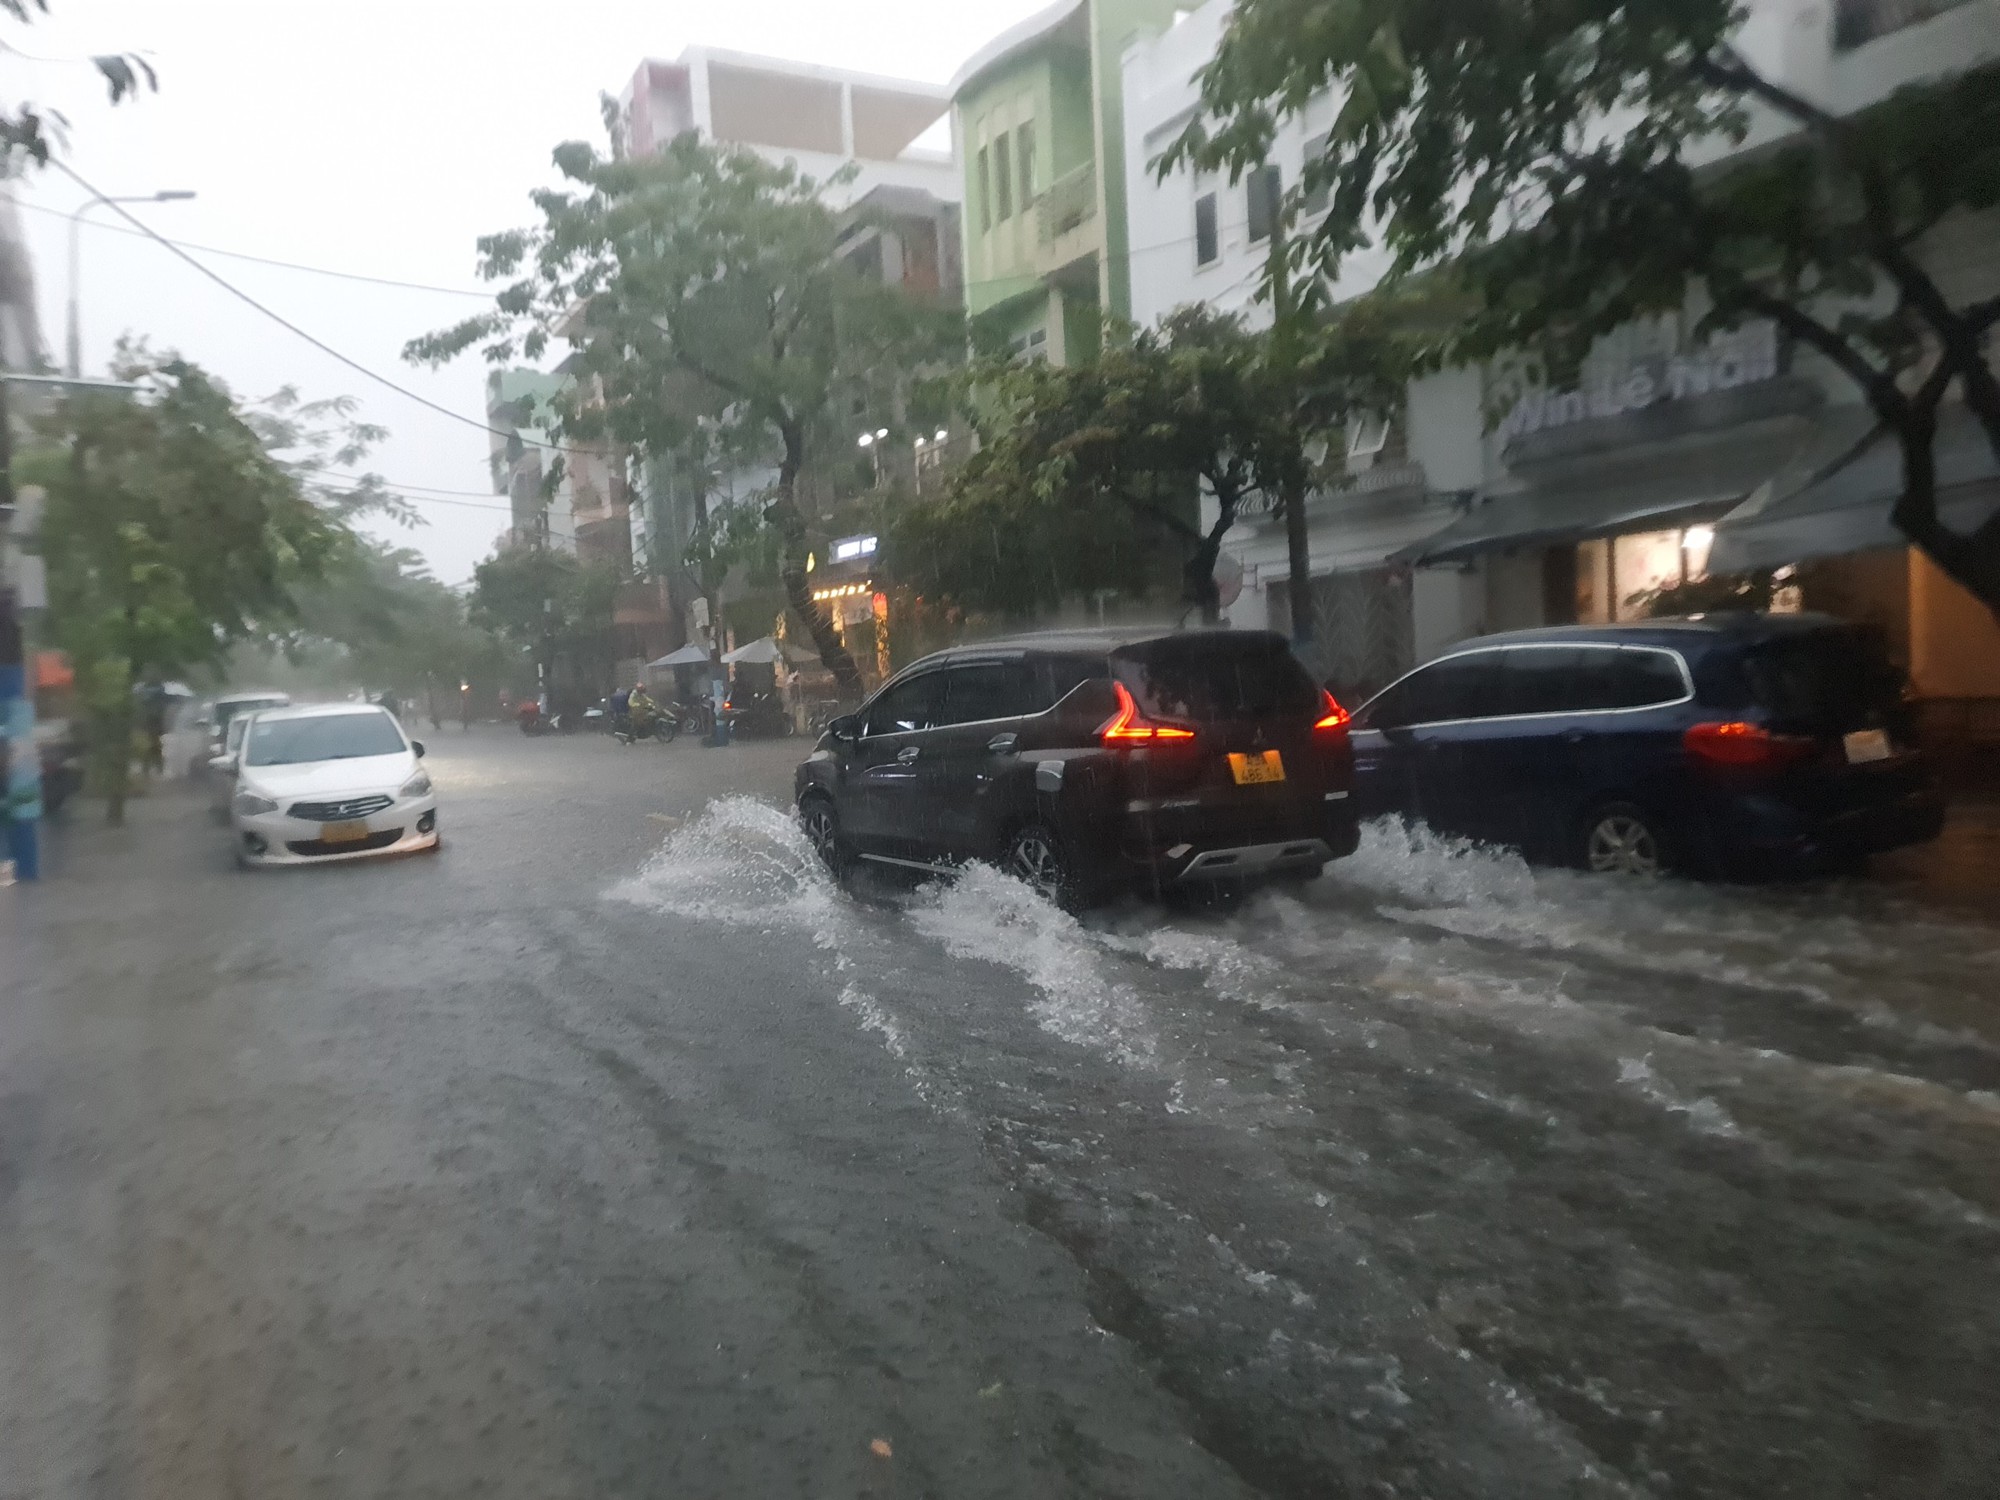 Bão số 5 gây mưa lớn, đường phố Đà Nẵng ngập, 2 tàu cá Khánh Hòa bị chìm  - Ảnh 8.